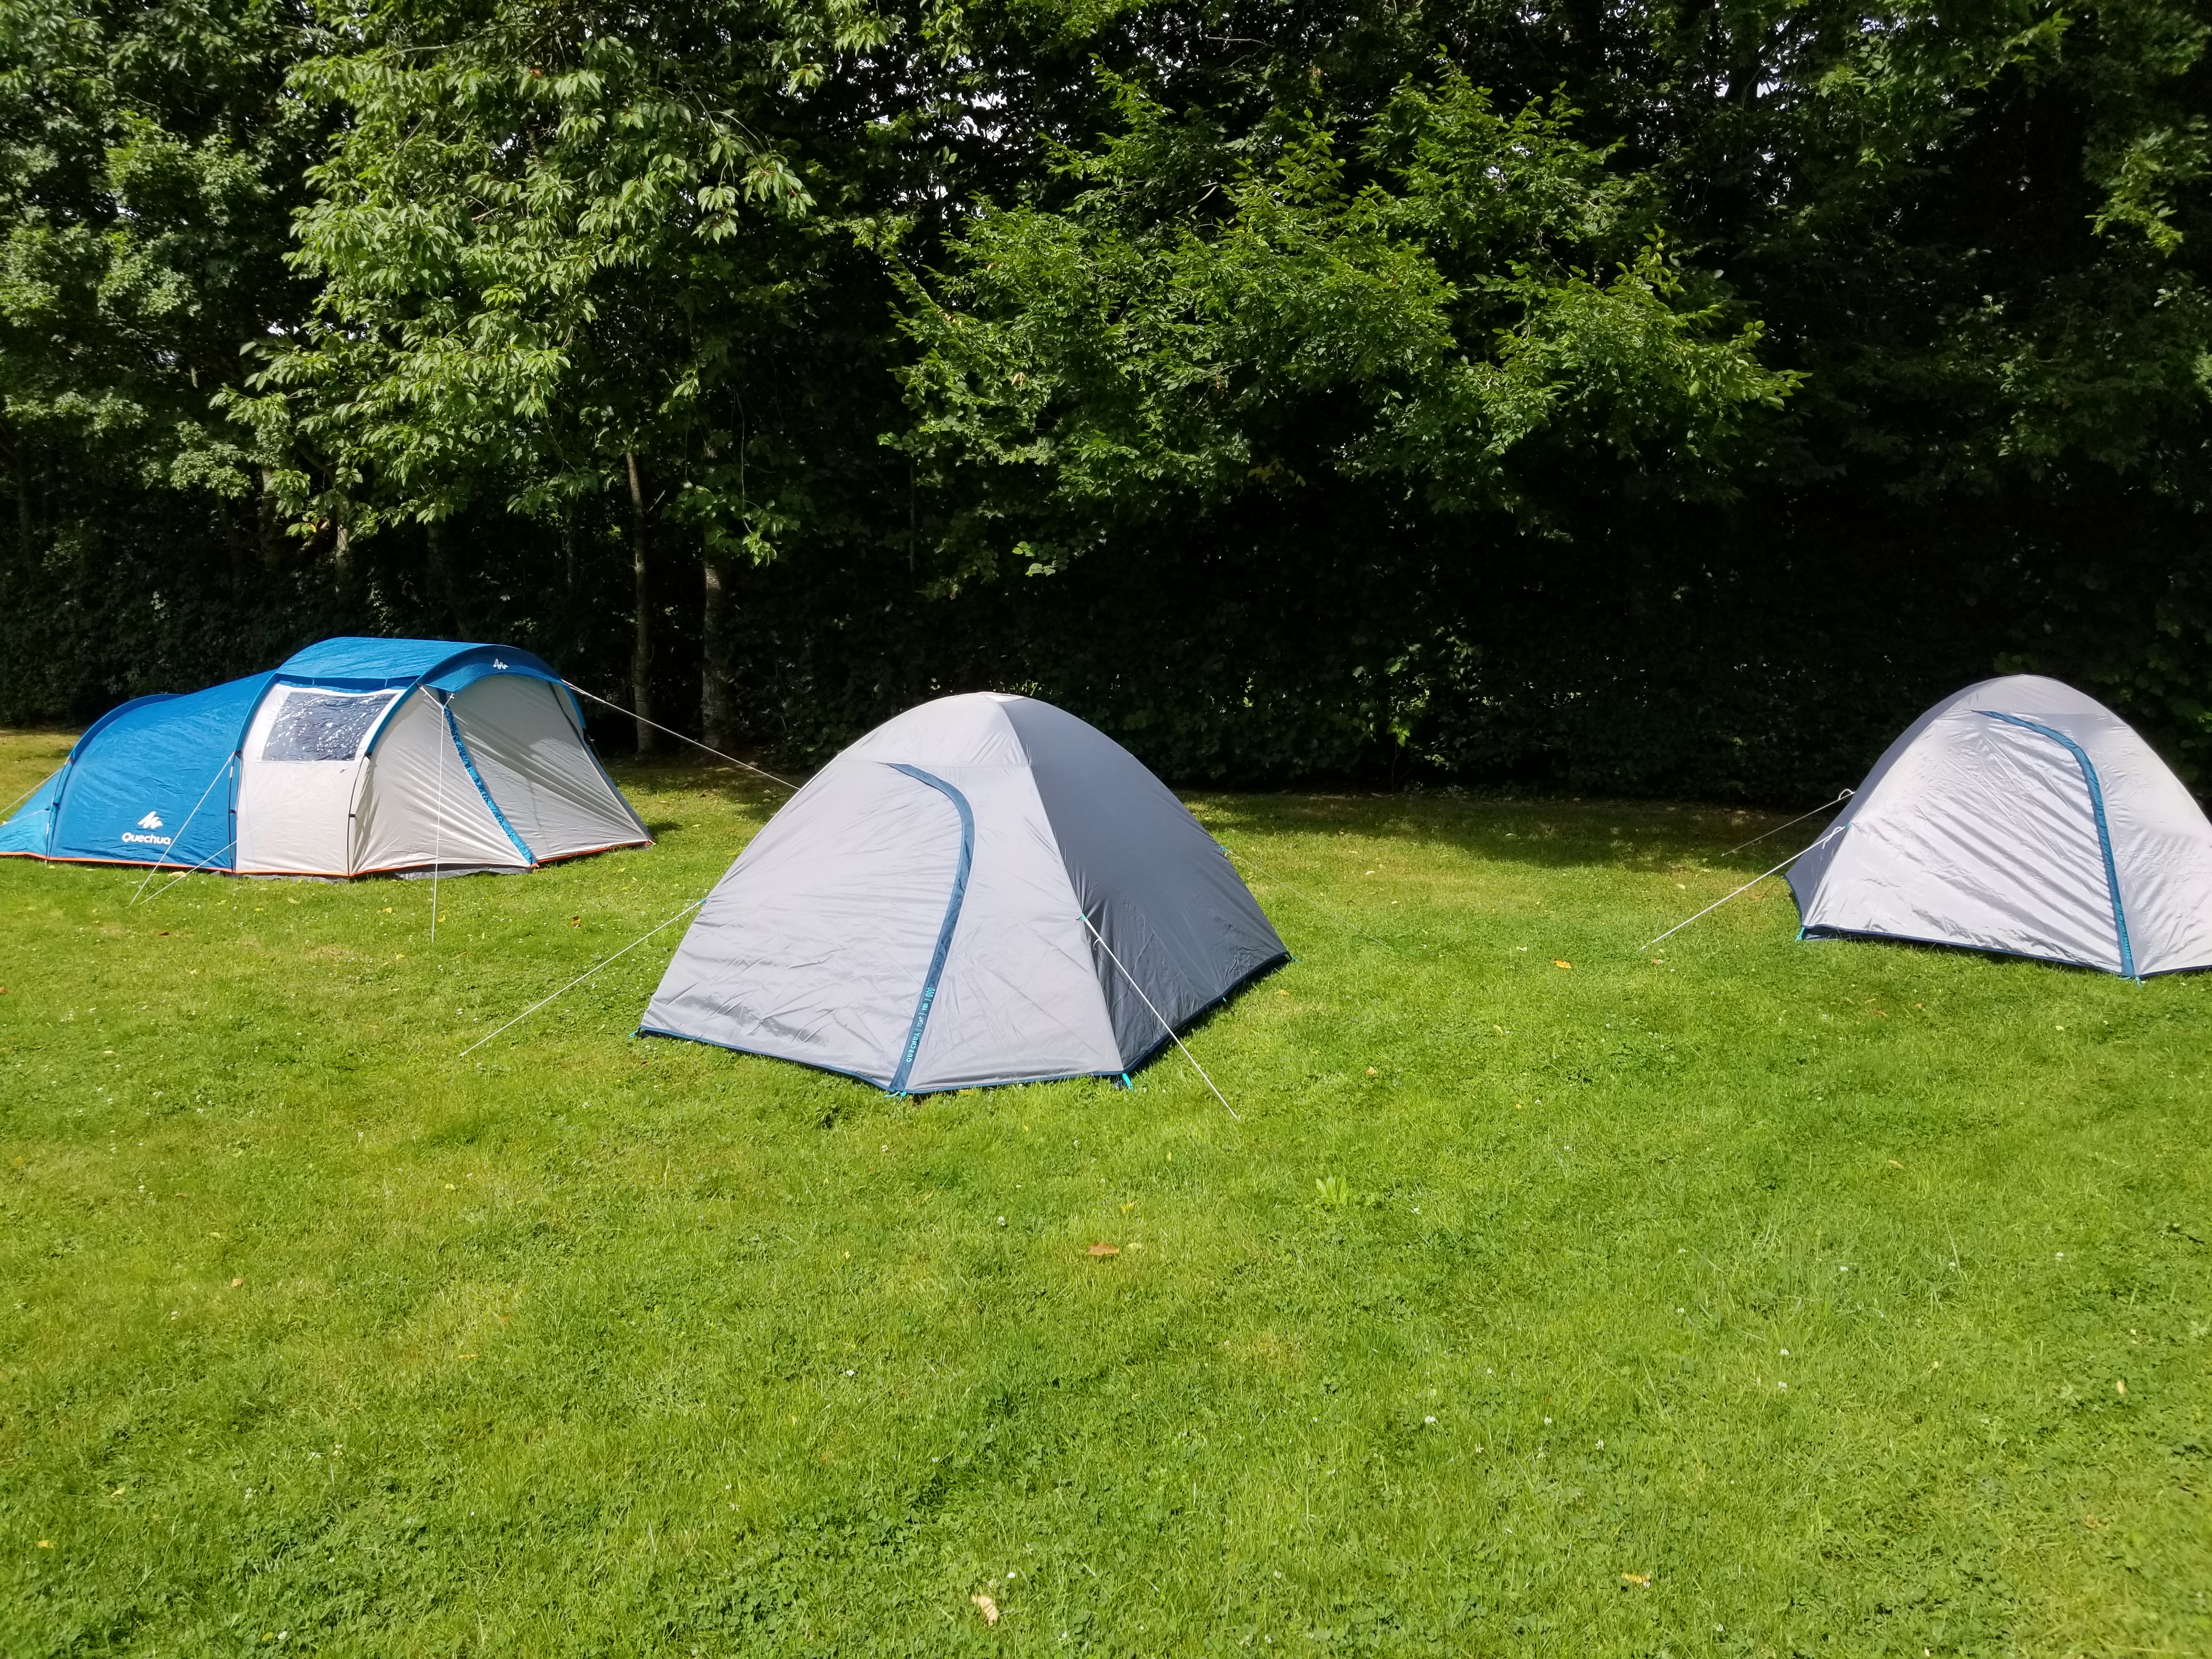 Les tentes VéloLéger installées au camping du Champ Passais à Domfront-en-Poiraie | Hébergements pour cyclotouristes et randonneurs